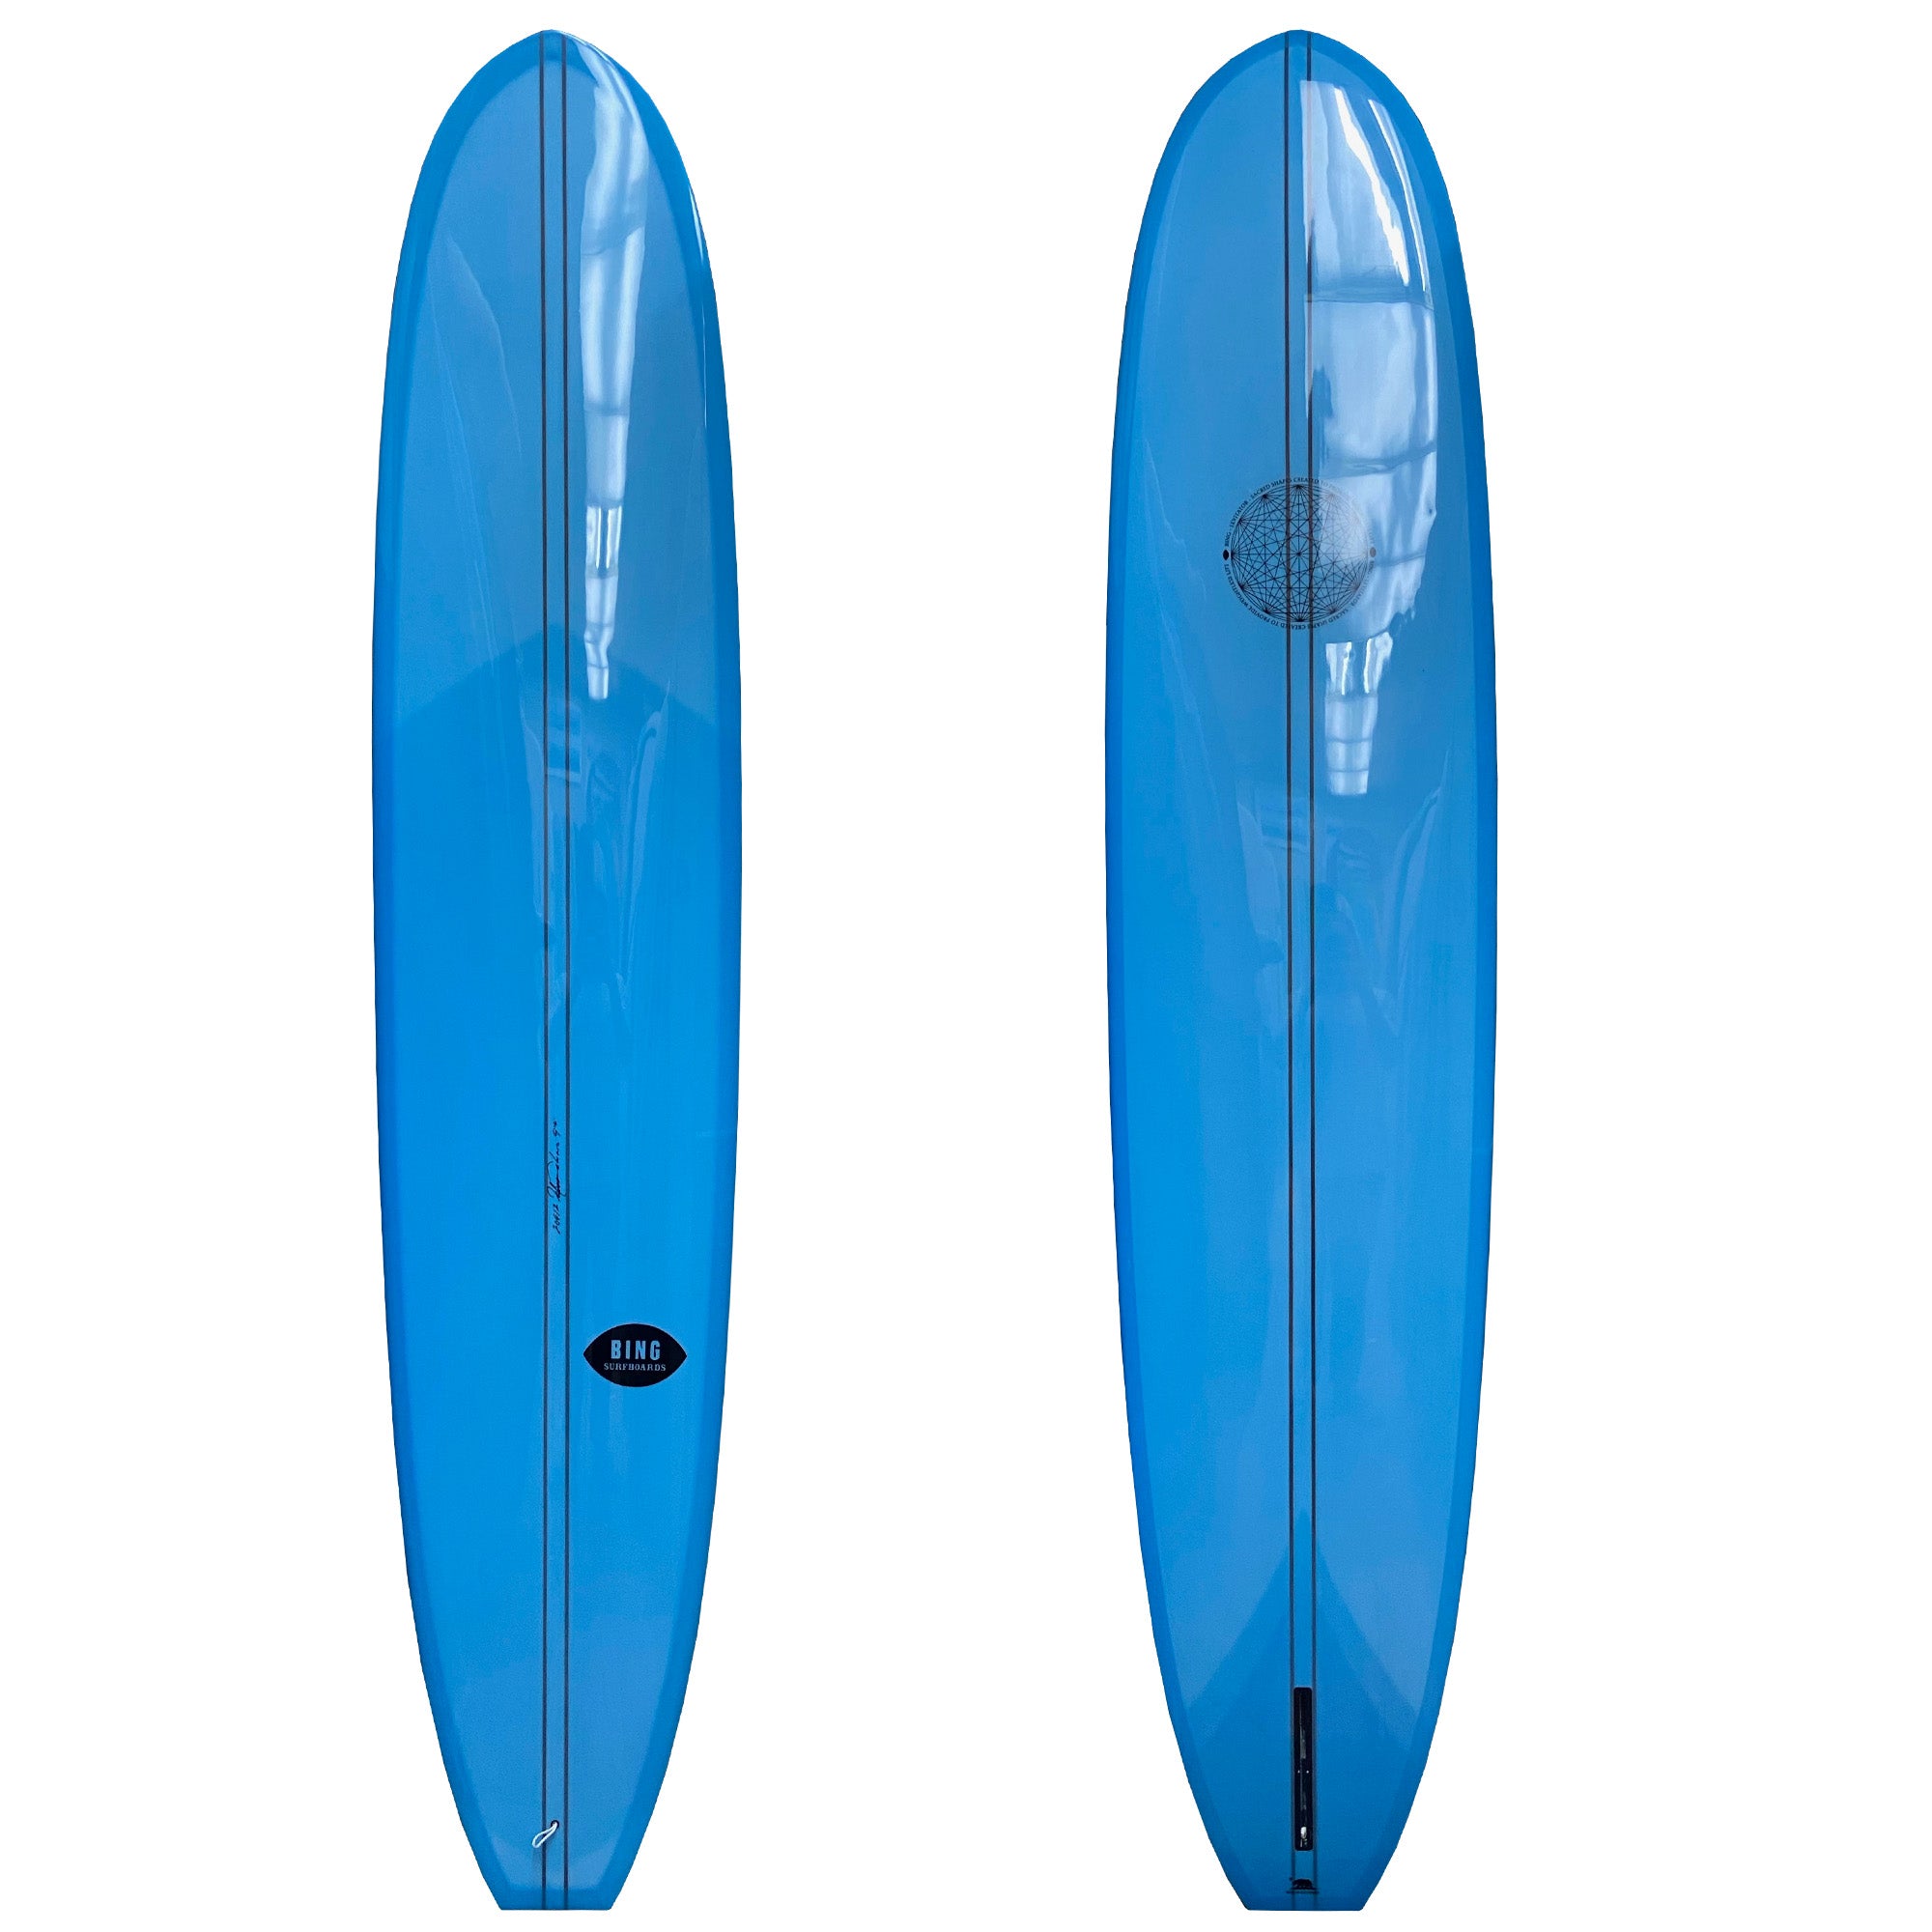 Bing Levitator Type II Longboard Surfboard - Surf Station Store